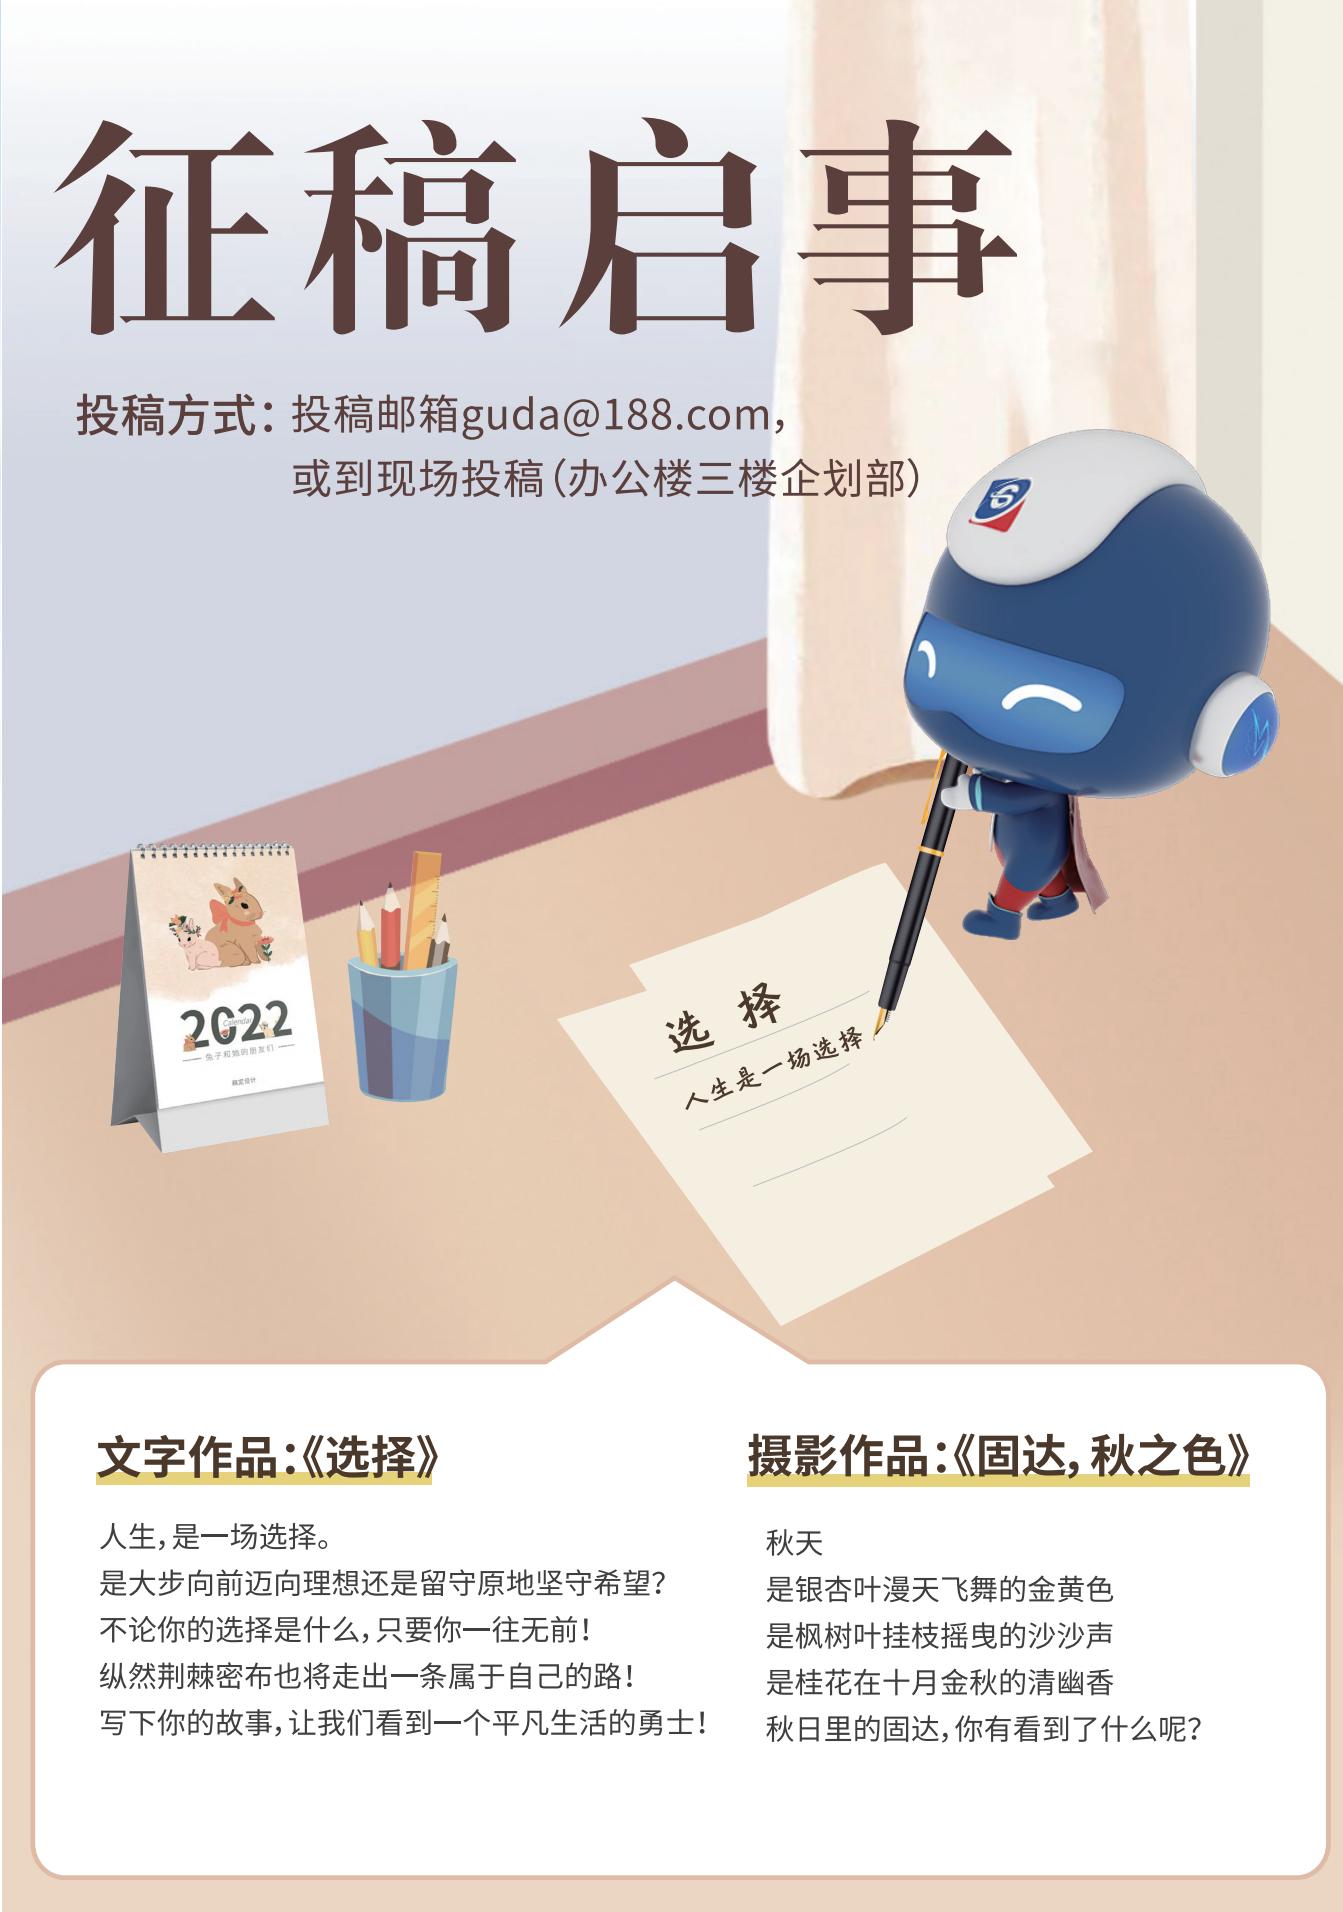 腾博游戏官方入口季刊第十七期